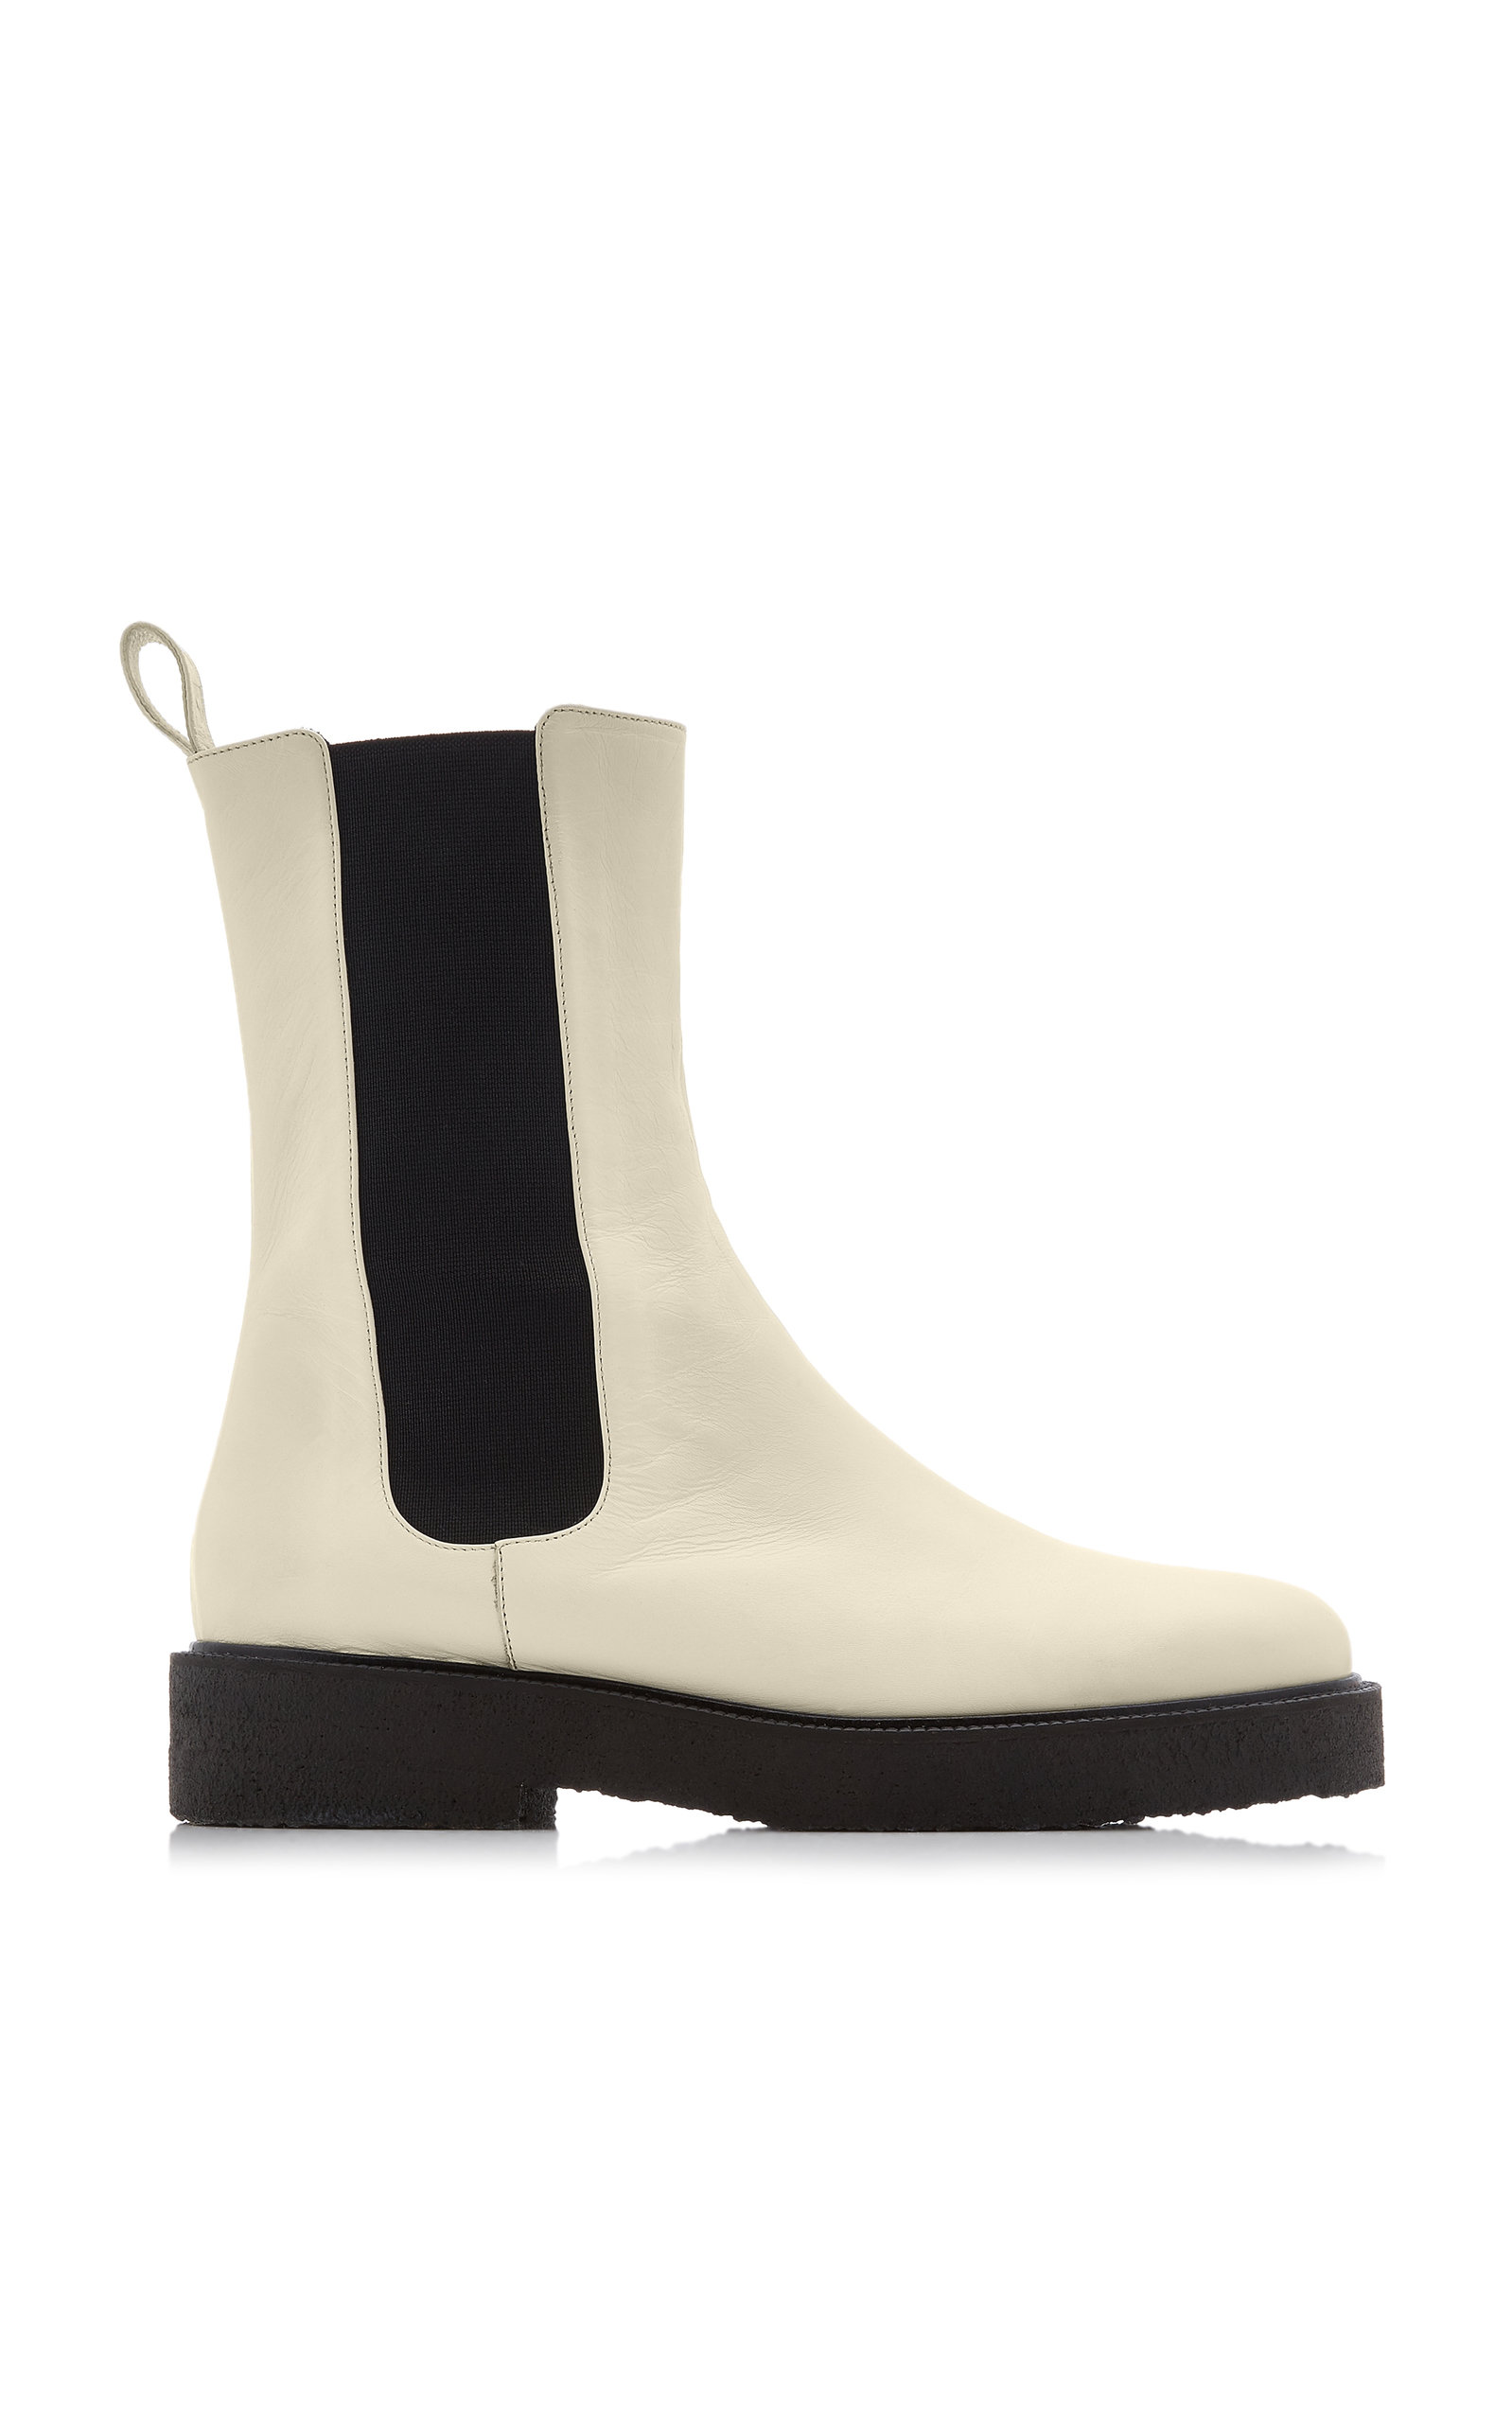 Staud - Women's Palamino Leather Chelsea Boots - White - Moda Operandi